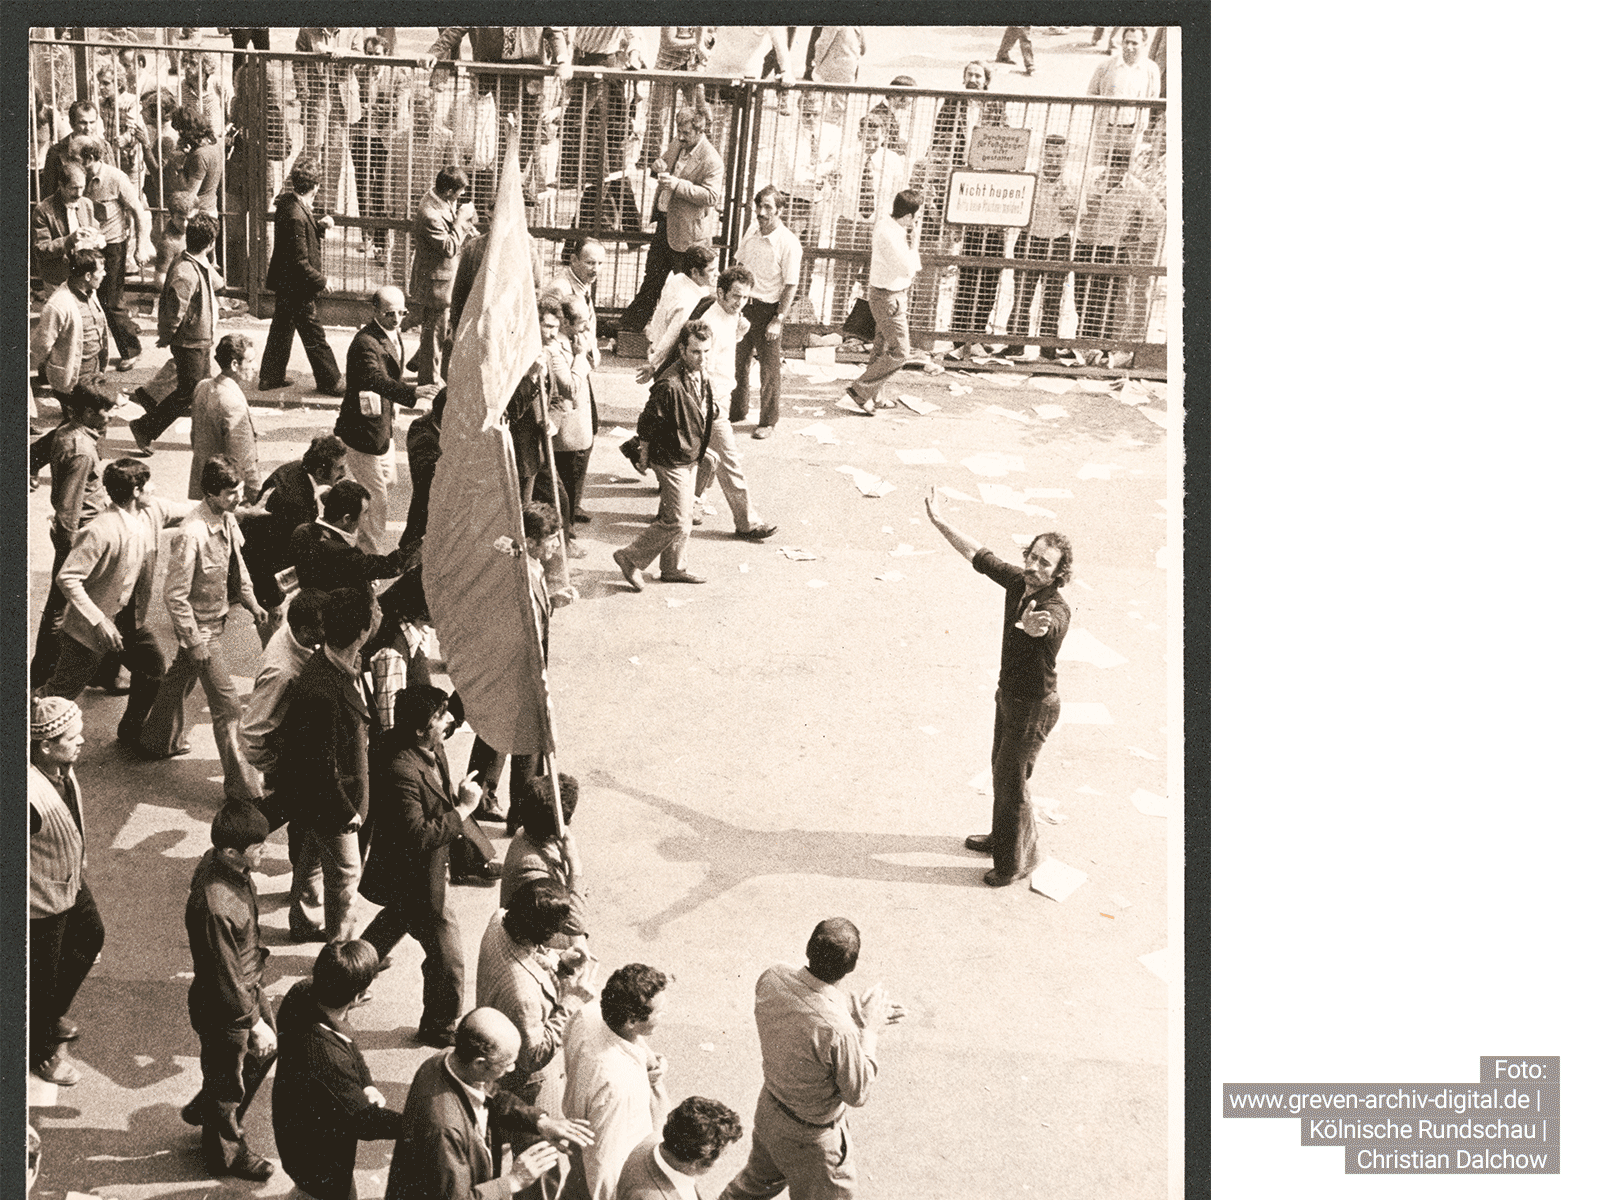 Nur eine Woche nachdem Baha Türgun seine Arbeit bei Ford aufgenommen hatte, fiel ihm die Rolle des Streikführers zu. Am 29.08.1973 orchestrierte er diesen Demonstrationszug im Werk. Foto: www.greven-archiv-digital.de | Kölnische Rundschau | Christian Dalchow